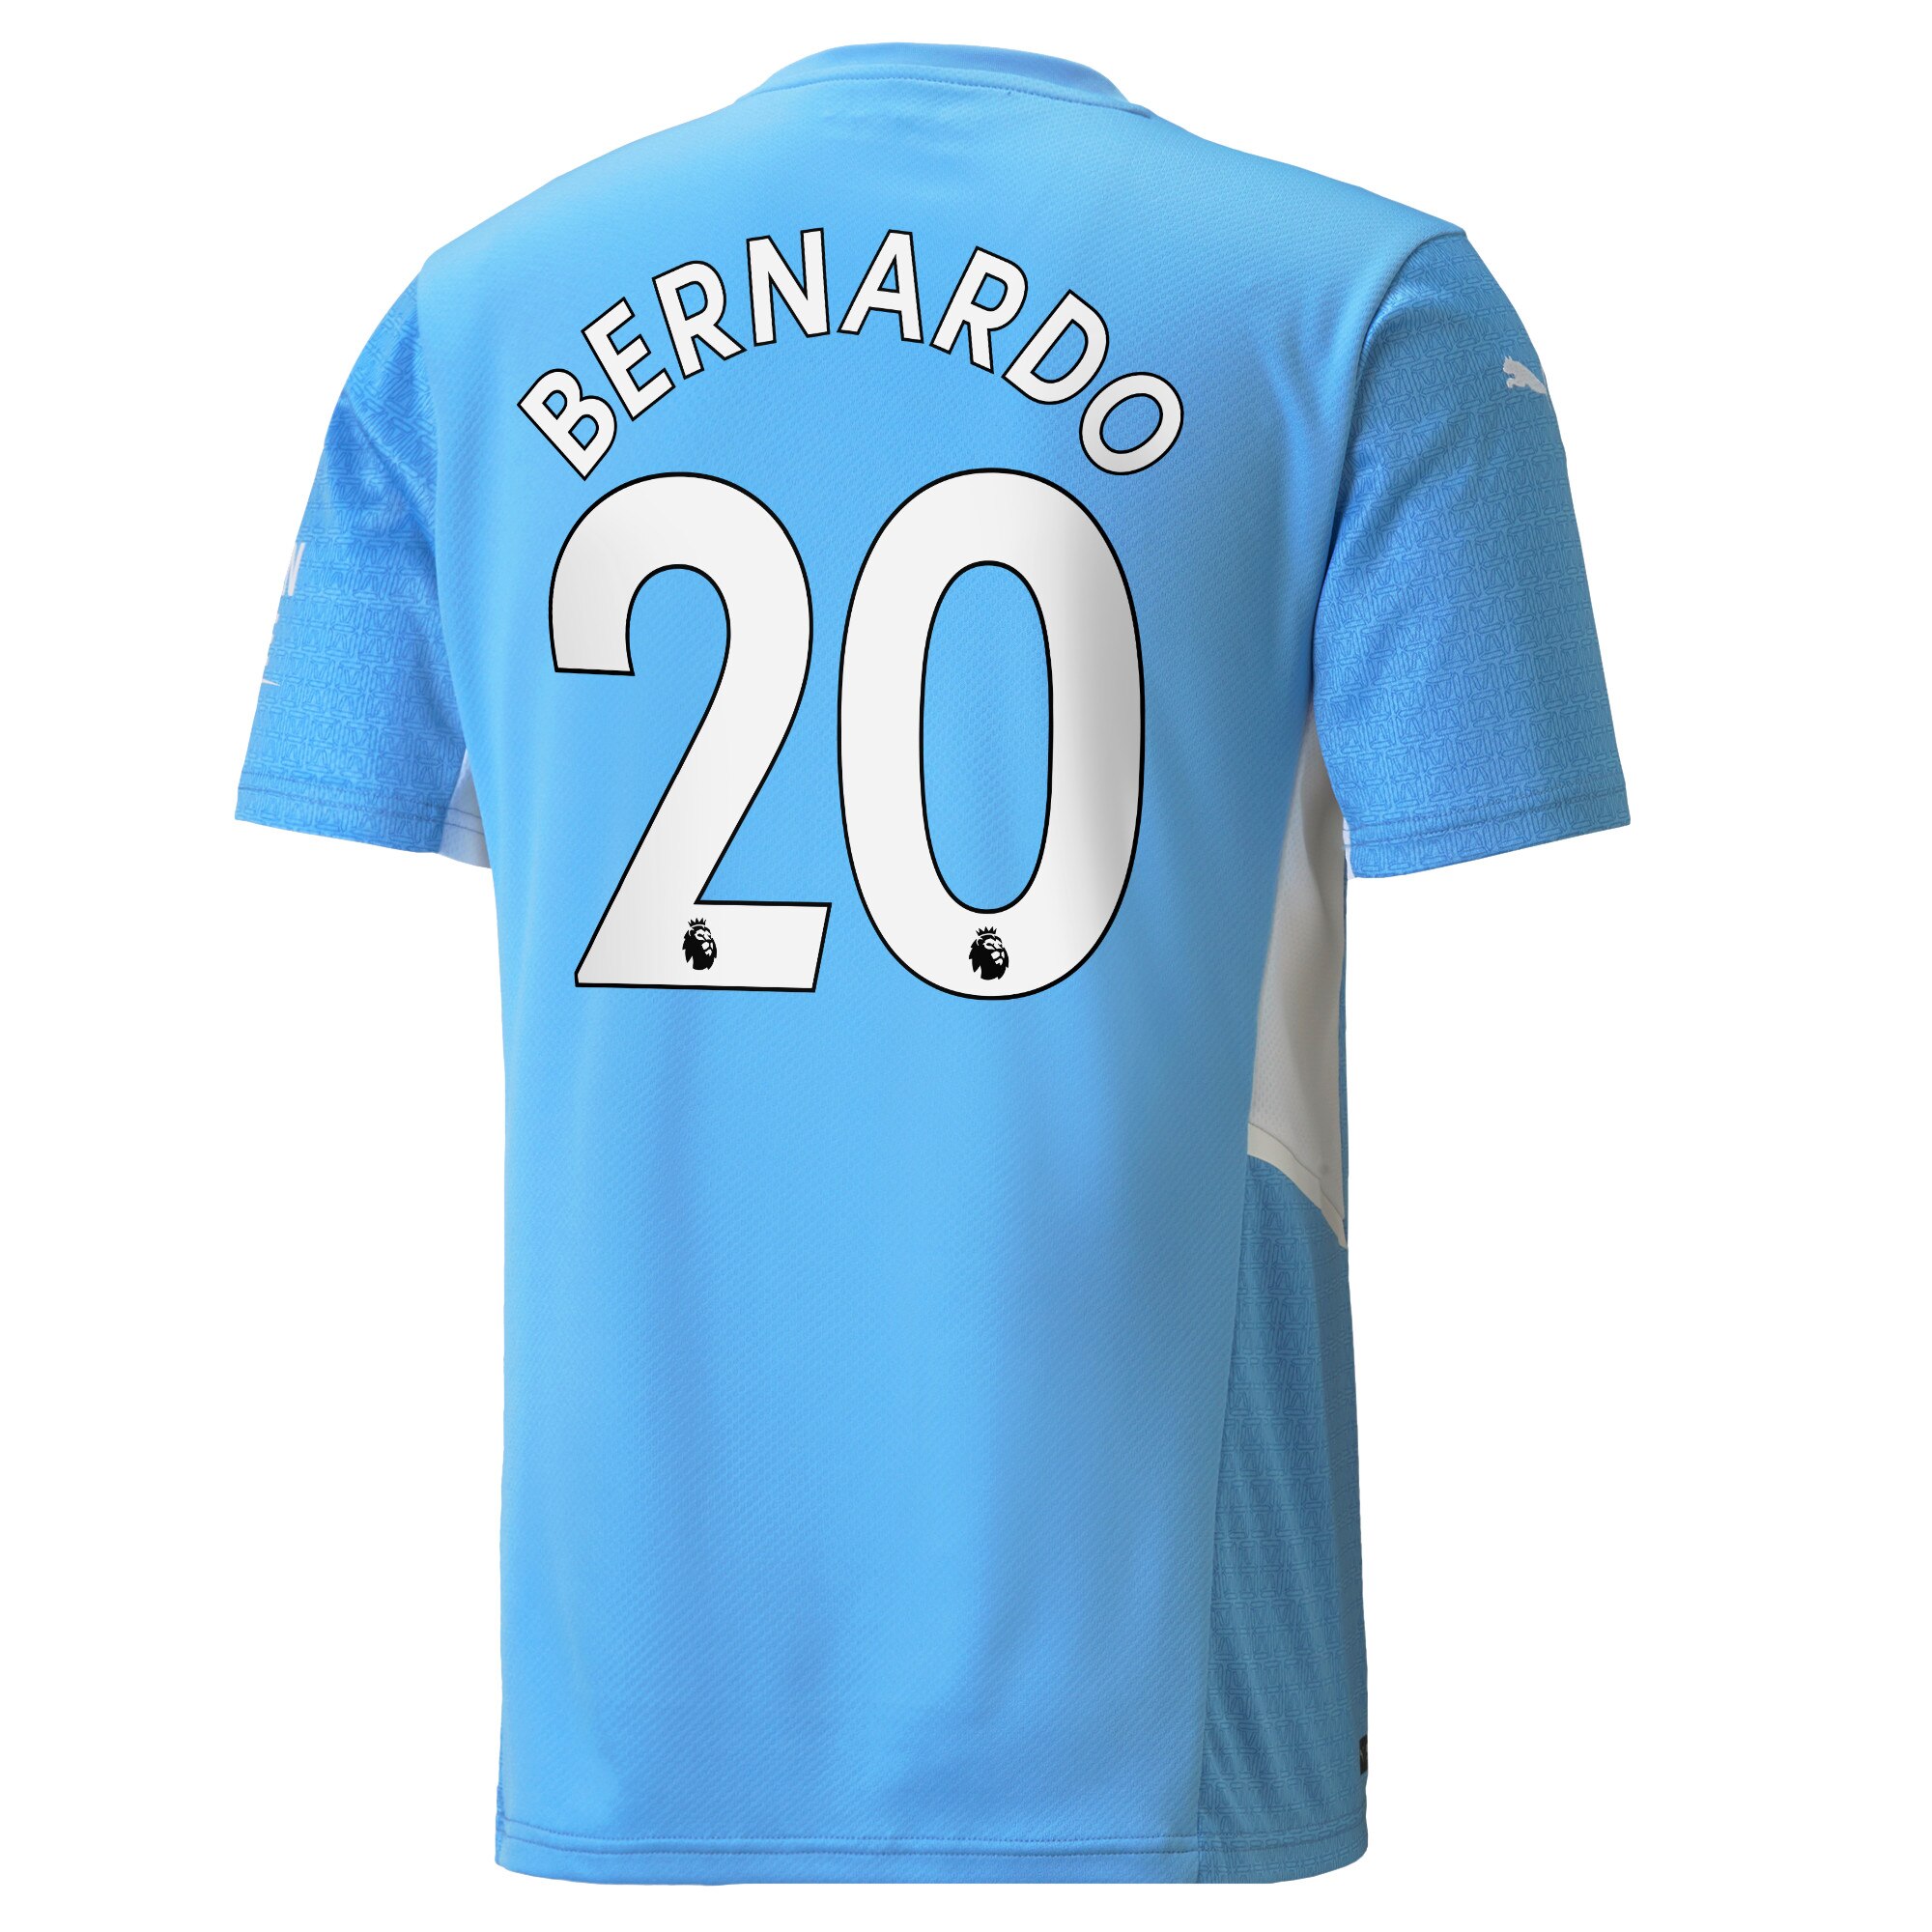 Manchester City Home Shirt 2021-22 with Bernardo 20 printing